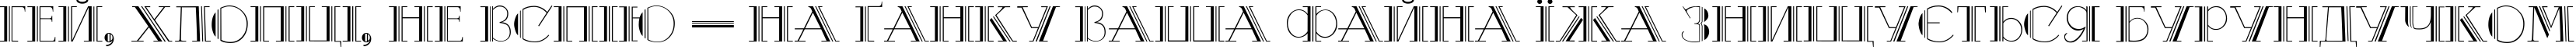 Пример написания шрифтом Debut Normal текста на украинском